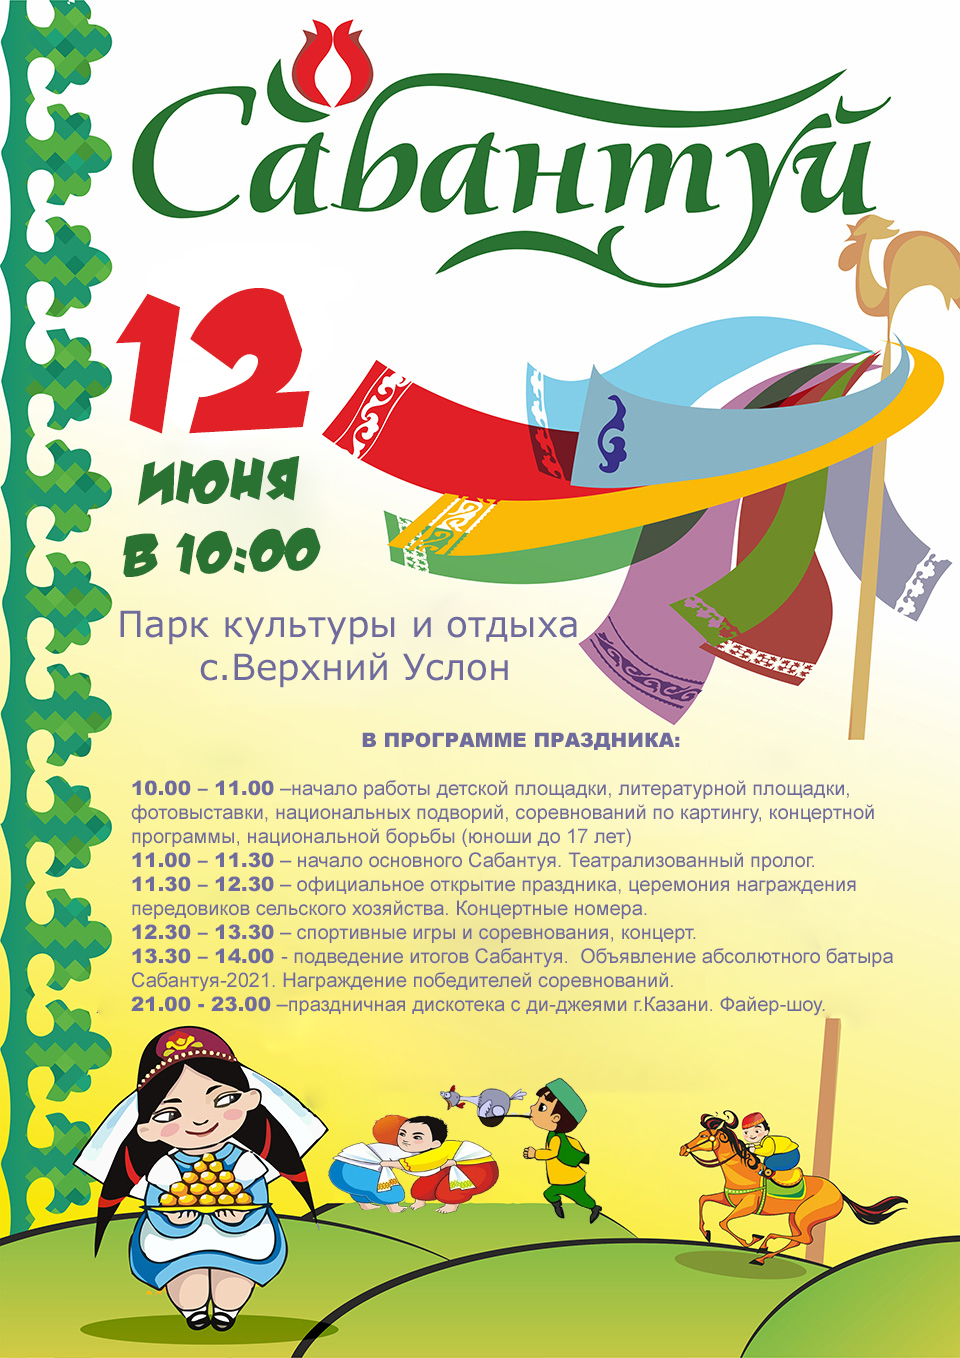 Спортивные игры народов Якутии стартуют 5 июля в селе Борогонцы